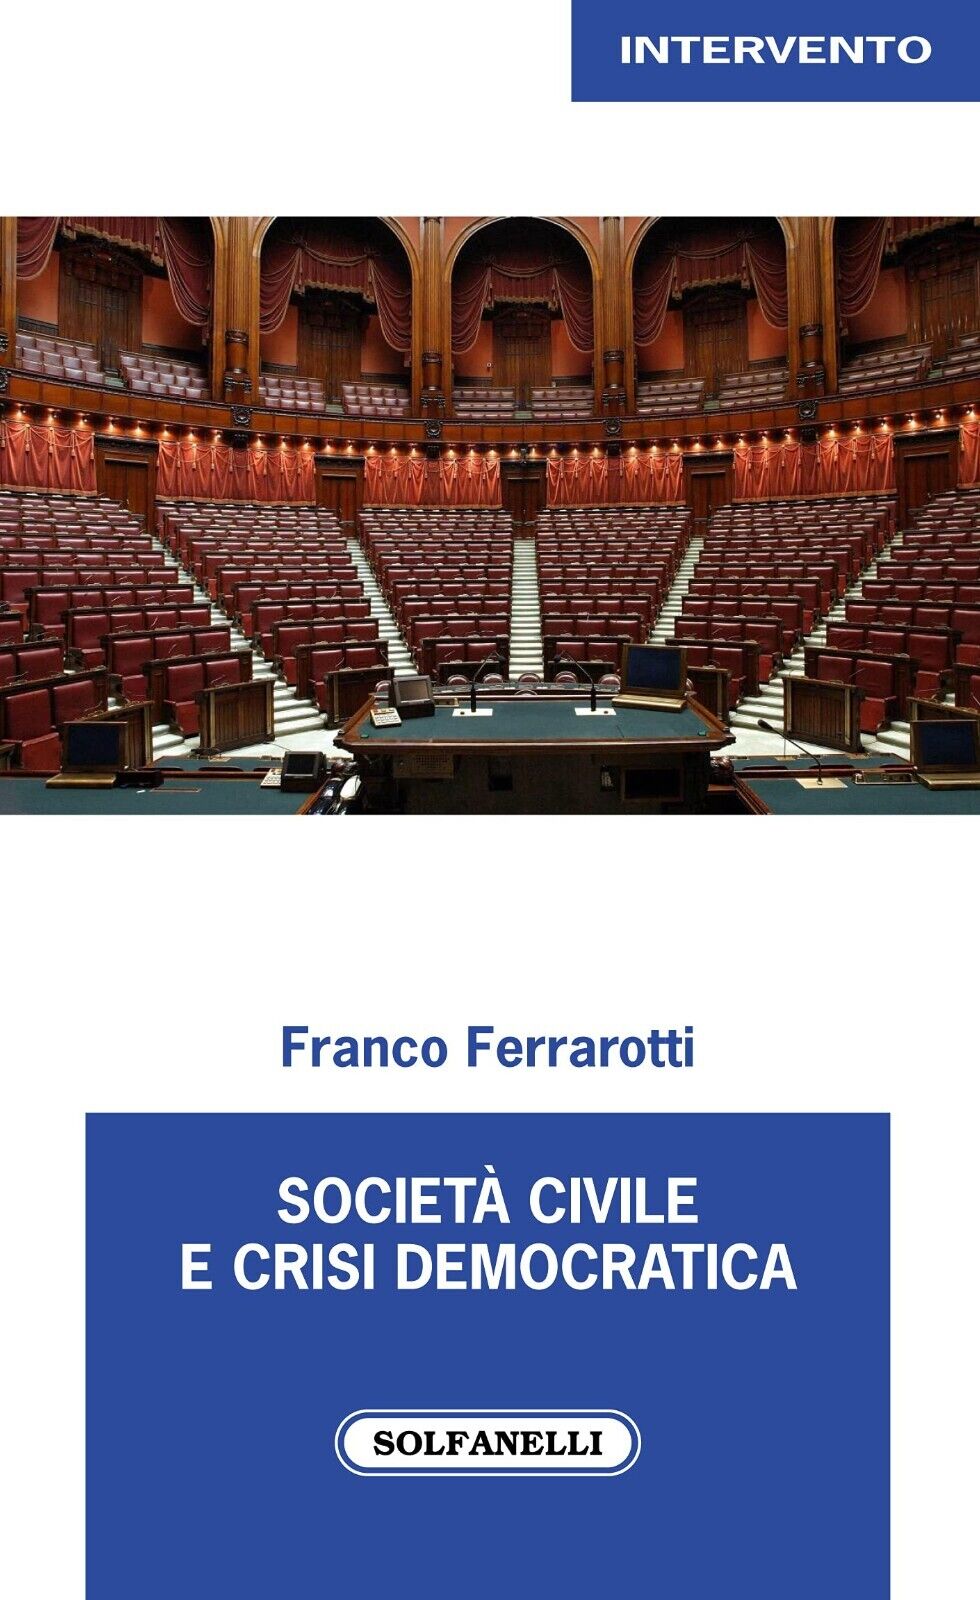 Societ? civile e crisi democratica di Franco Ferrarotti, 2021, Solfanelli